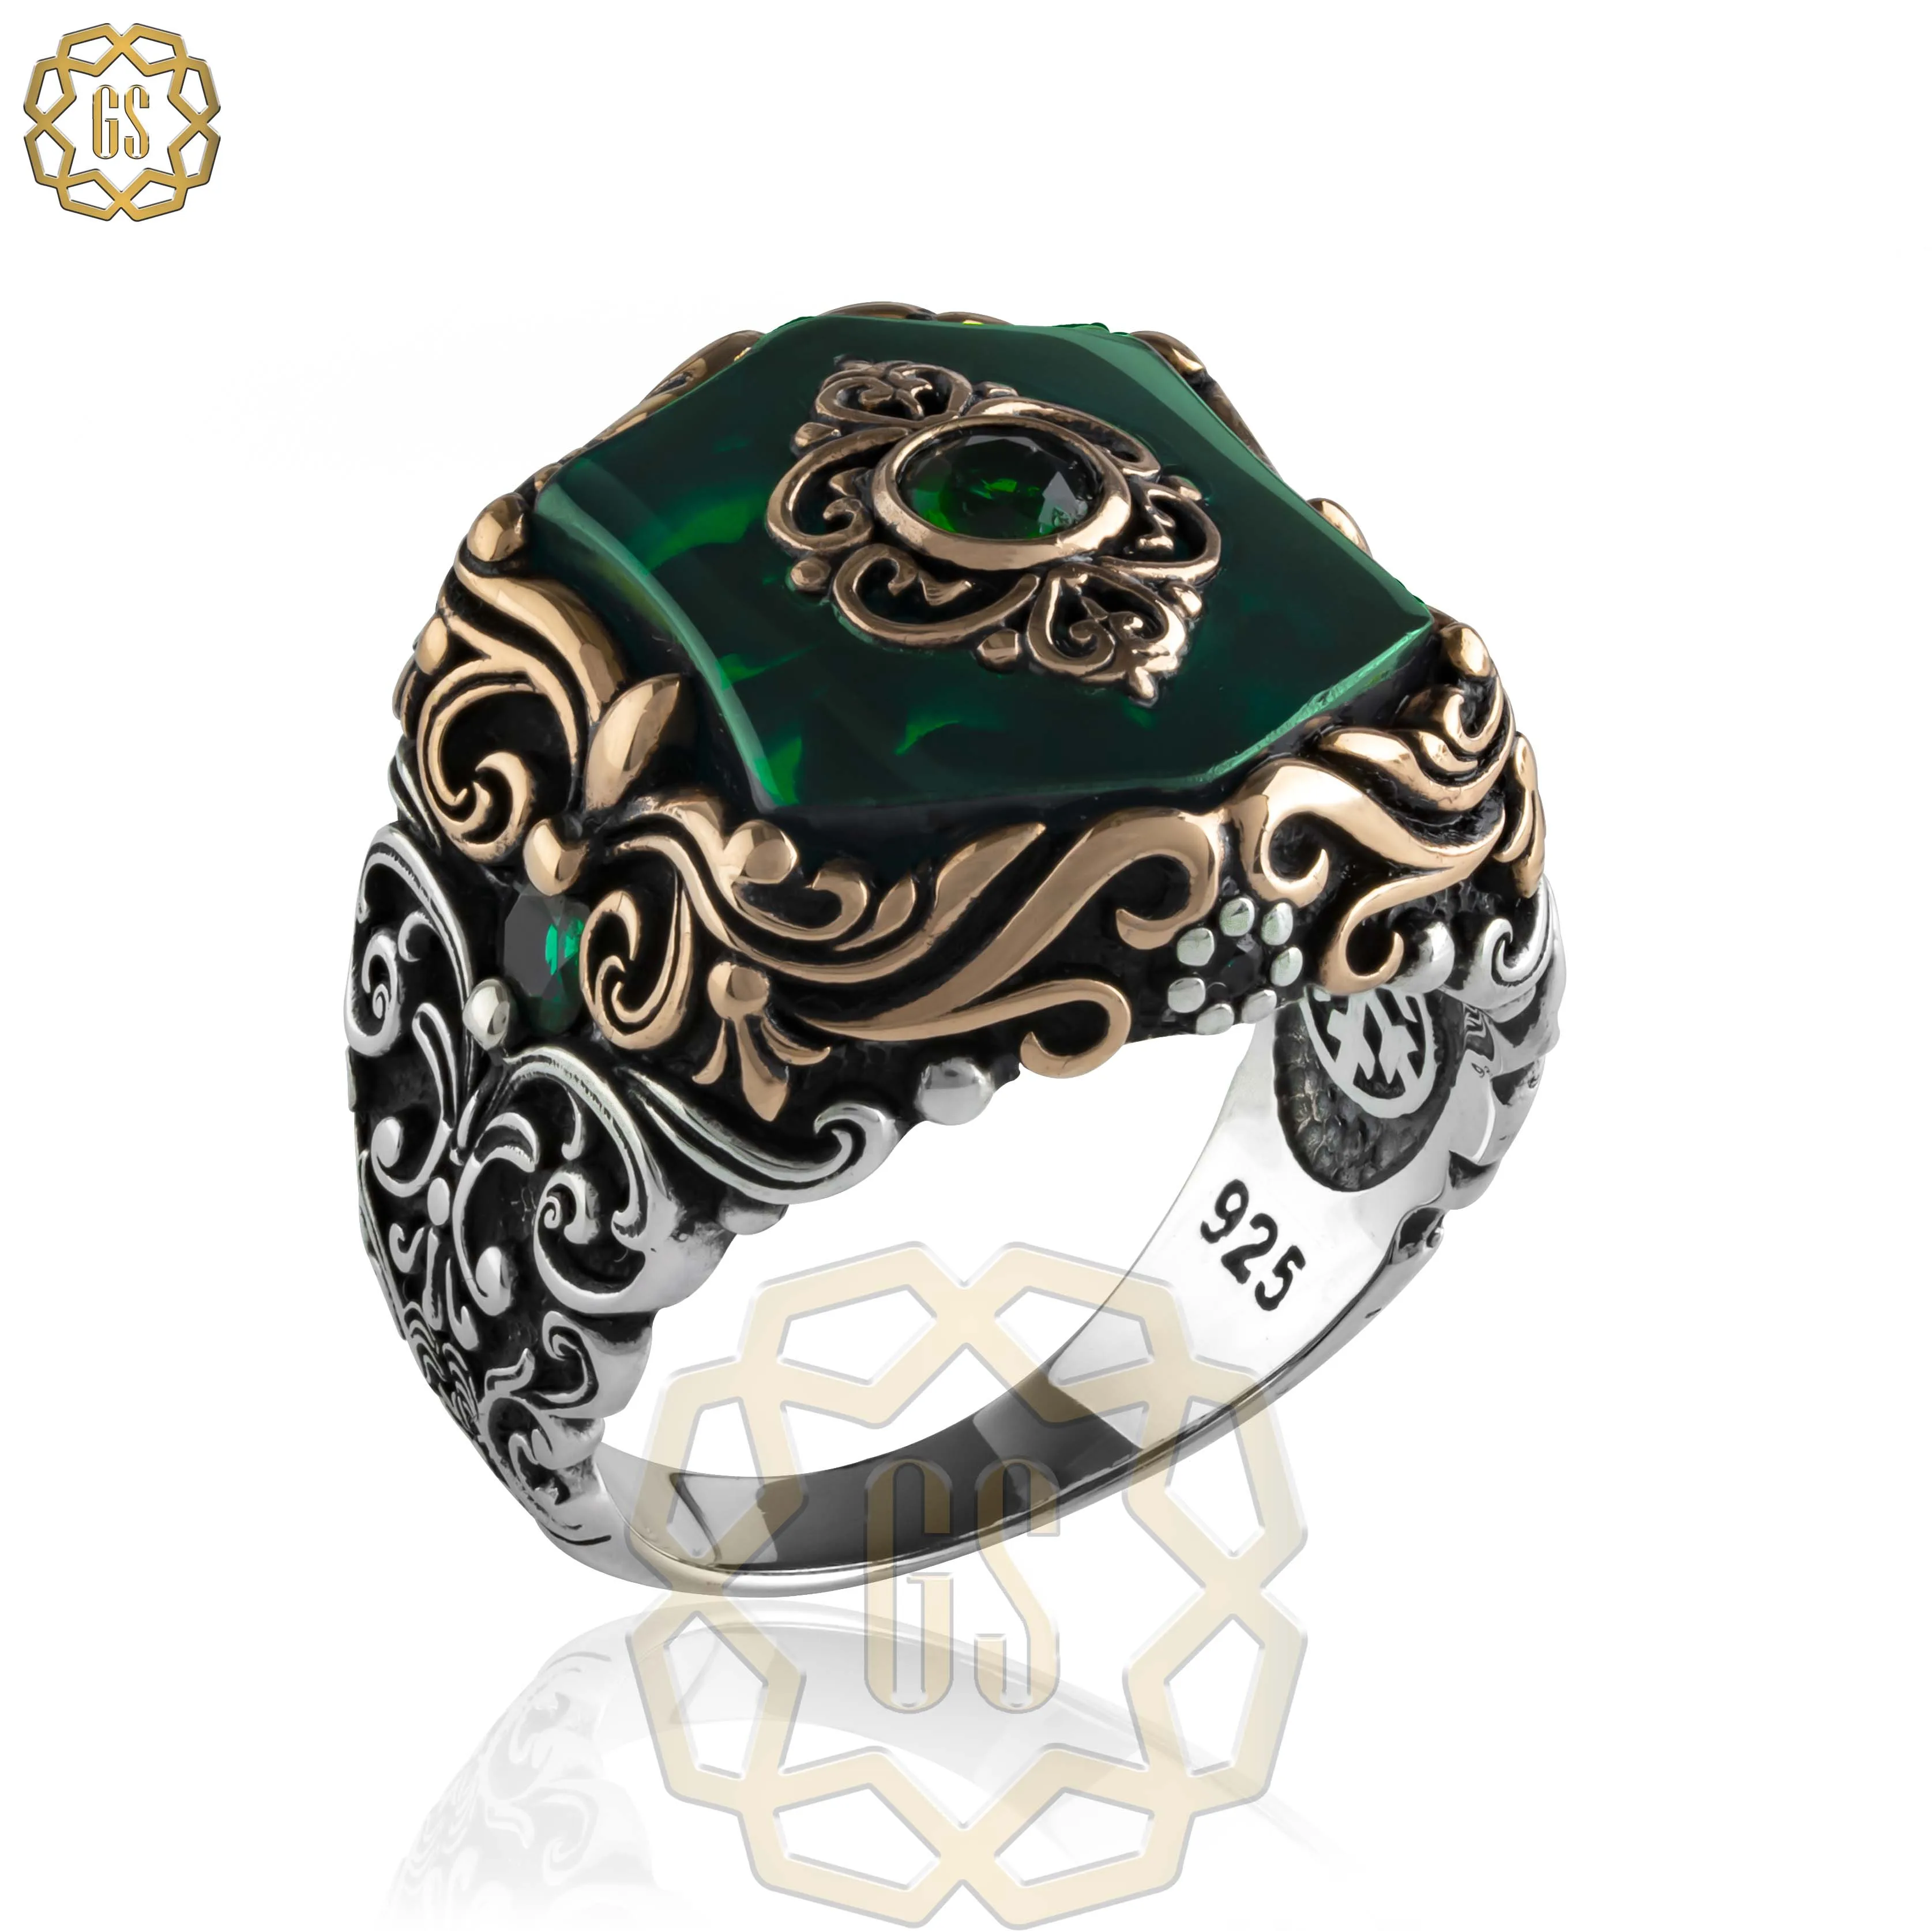 

Серебряное кольцо для мужчин 925 Сделано в Турции с камнем (ракушка, агат, оникс) .. Гарантированное высокое качество .. Турецкие украшения